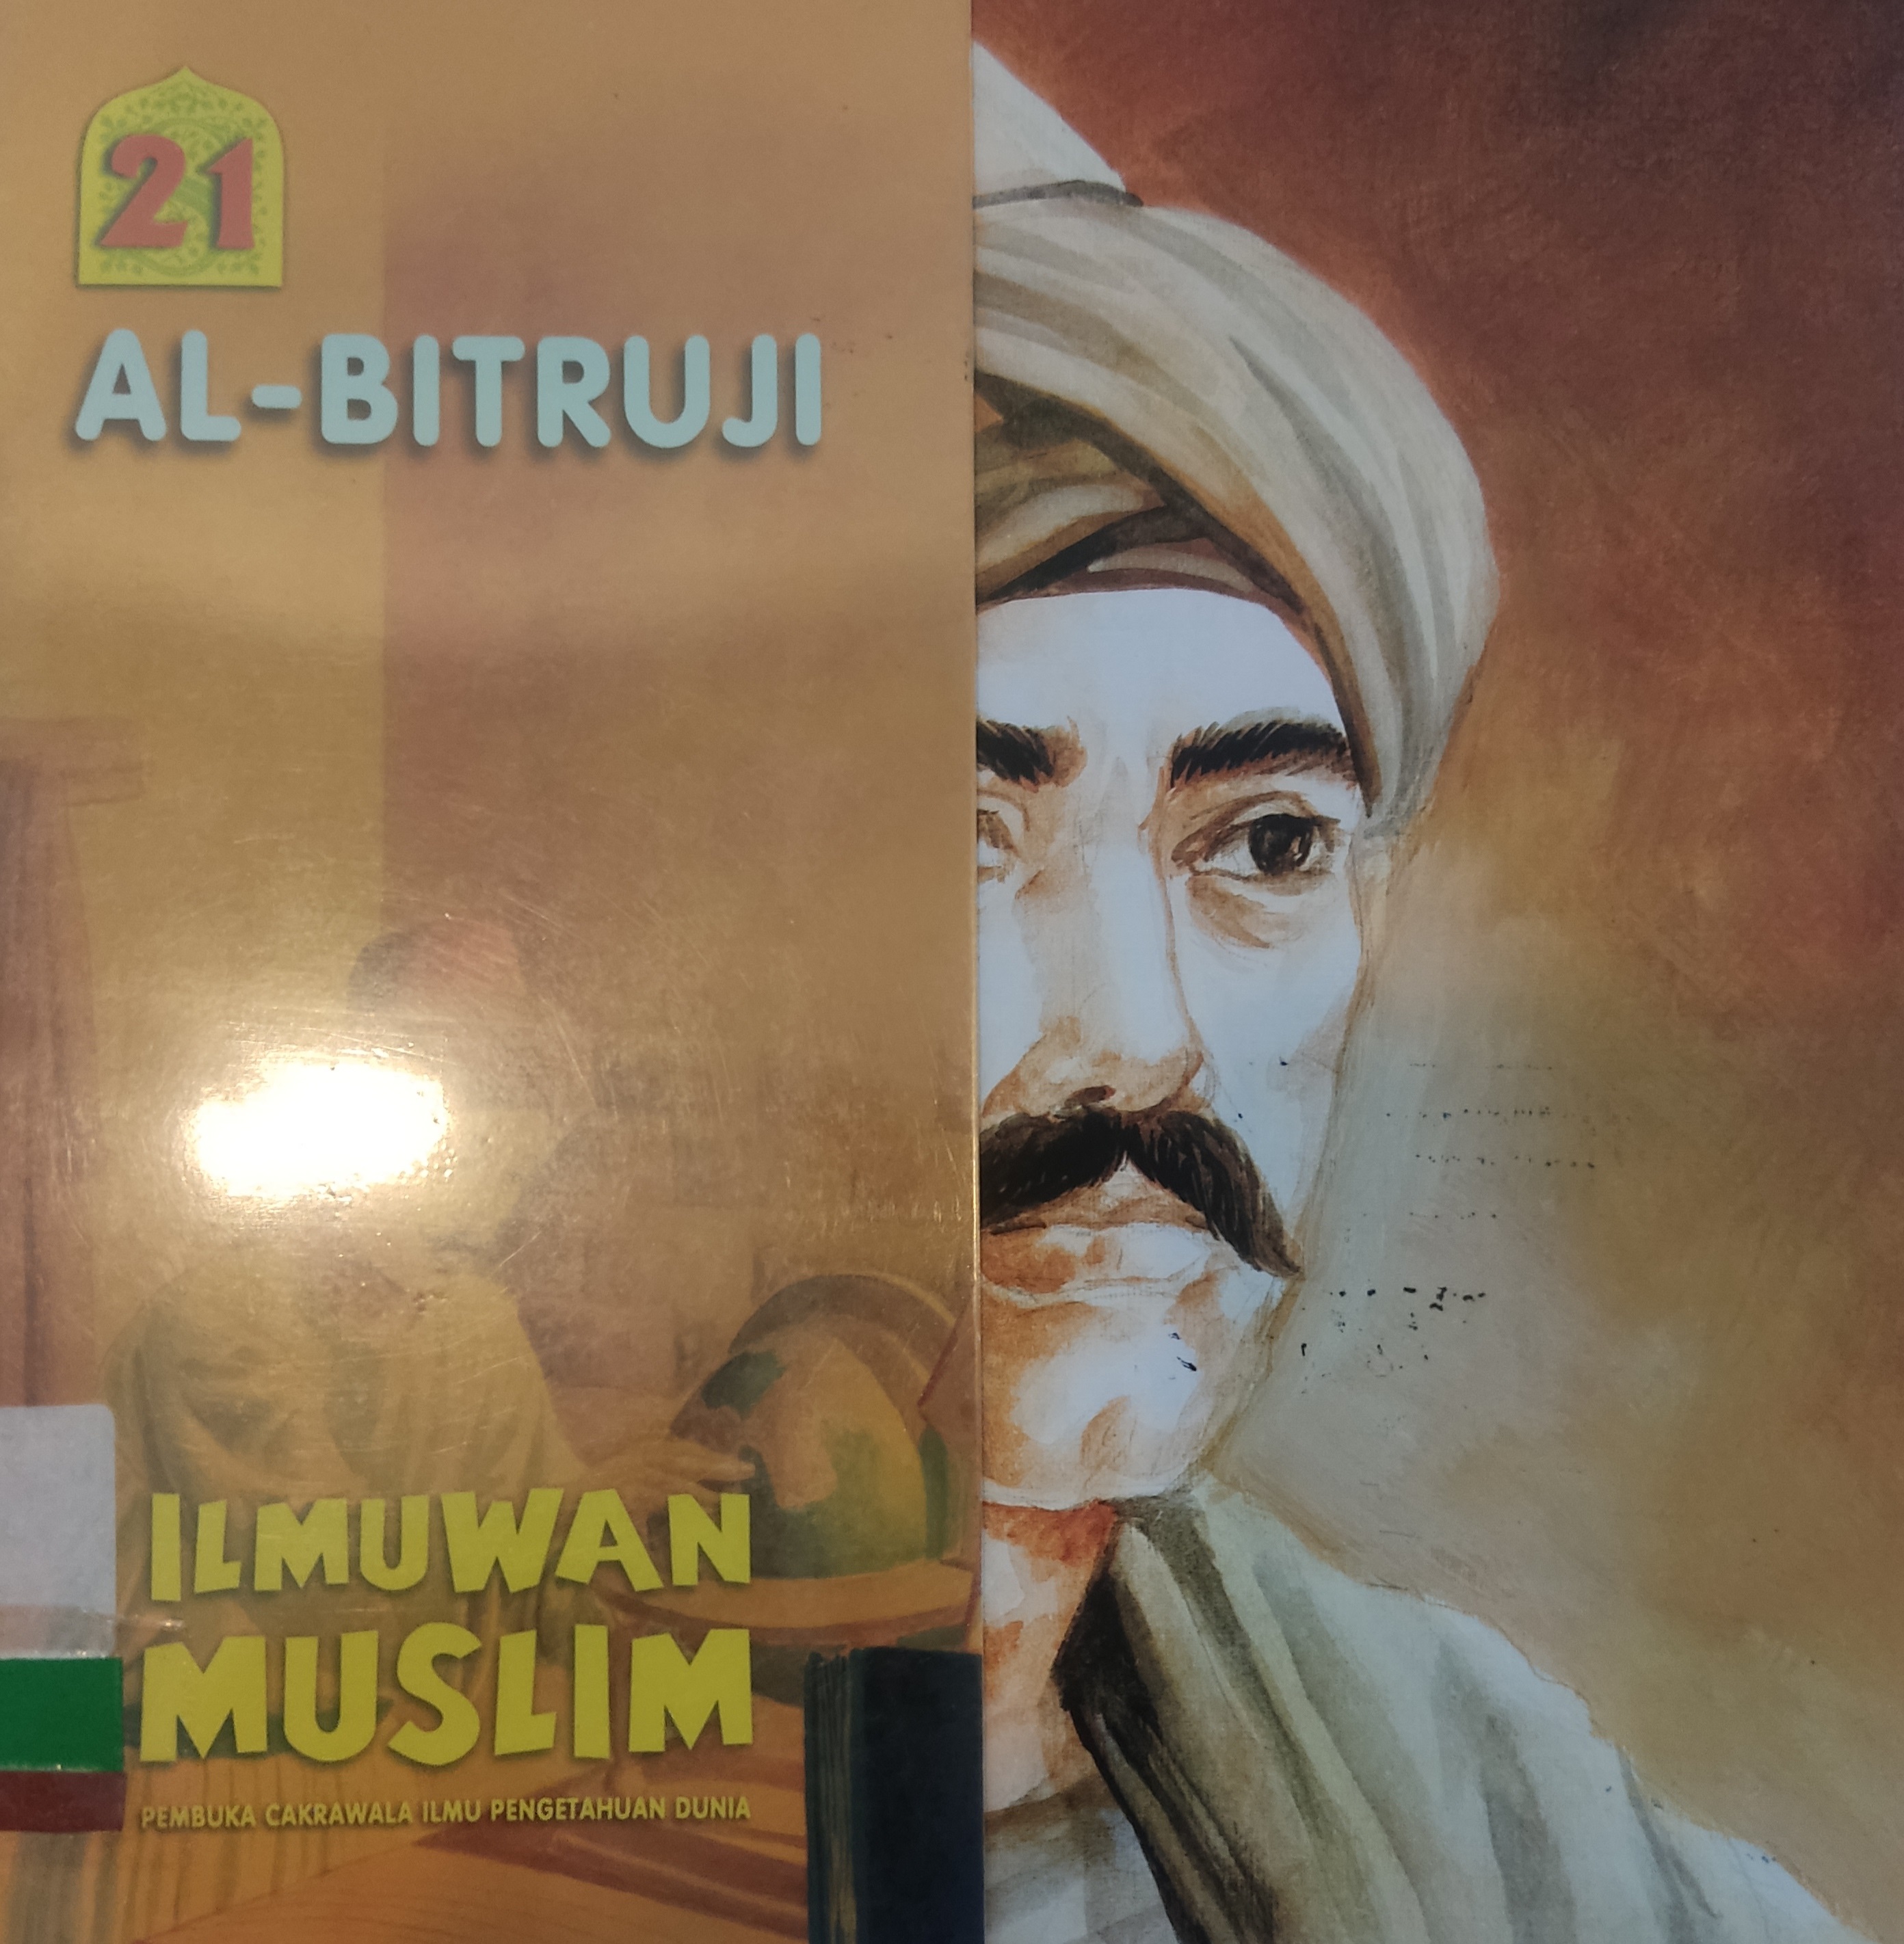 ILMUWAN Muslim Pembuka Cakrawala Ilmu Pengetahuan Dunia Jilid 21 :  Al-Bitruji